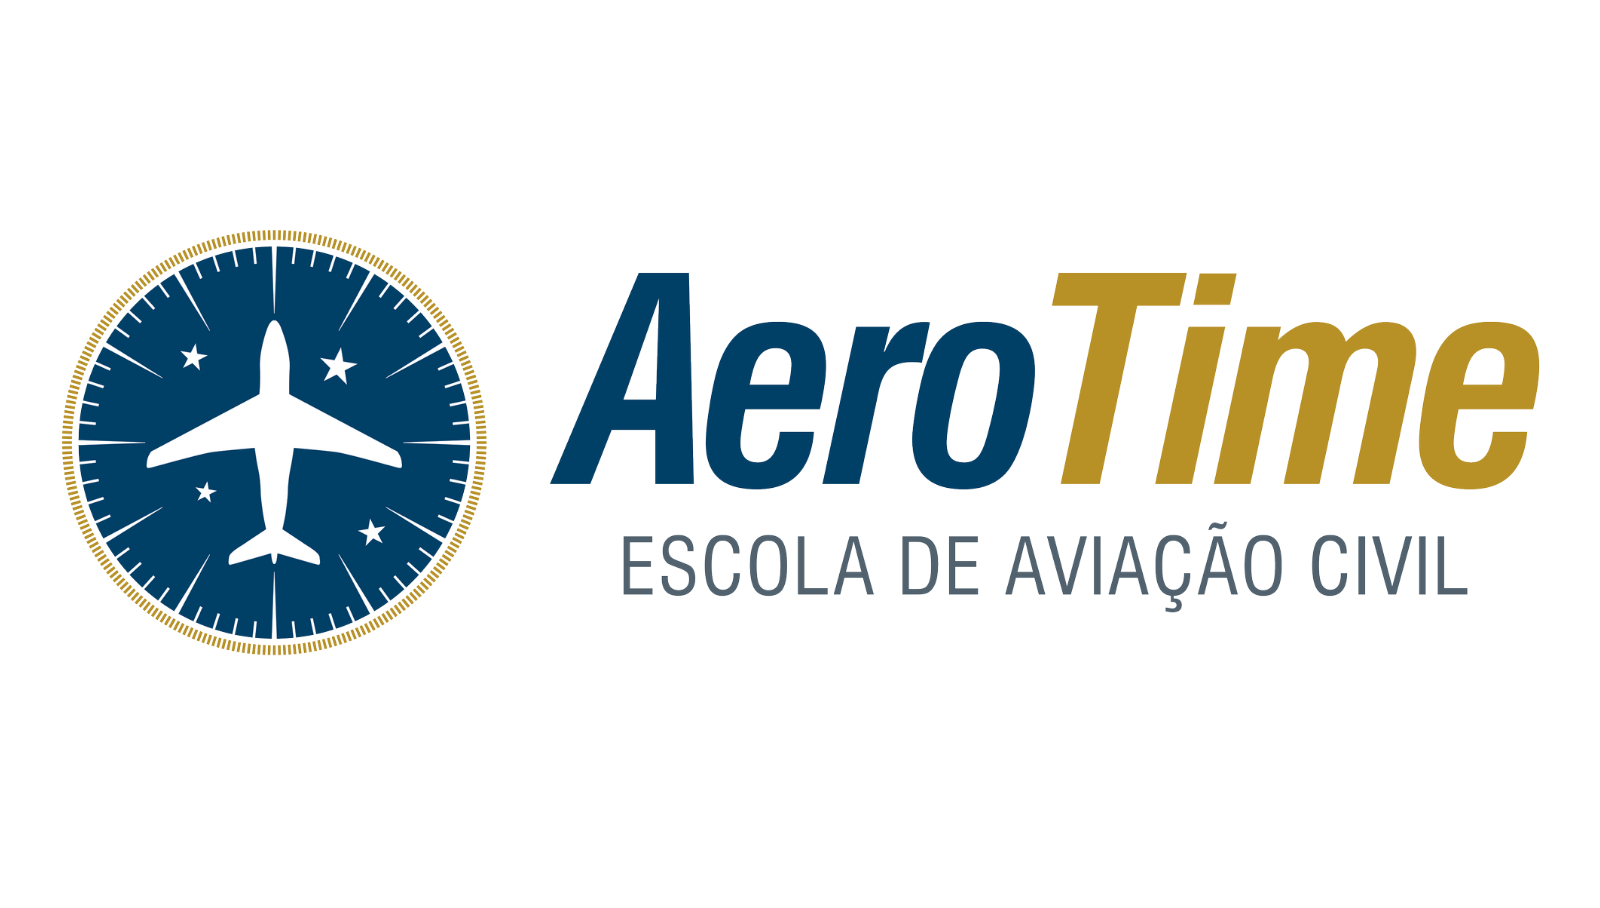 Conheça a escola de aviação civil que o Piloto Brasil recomenda